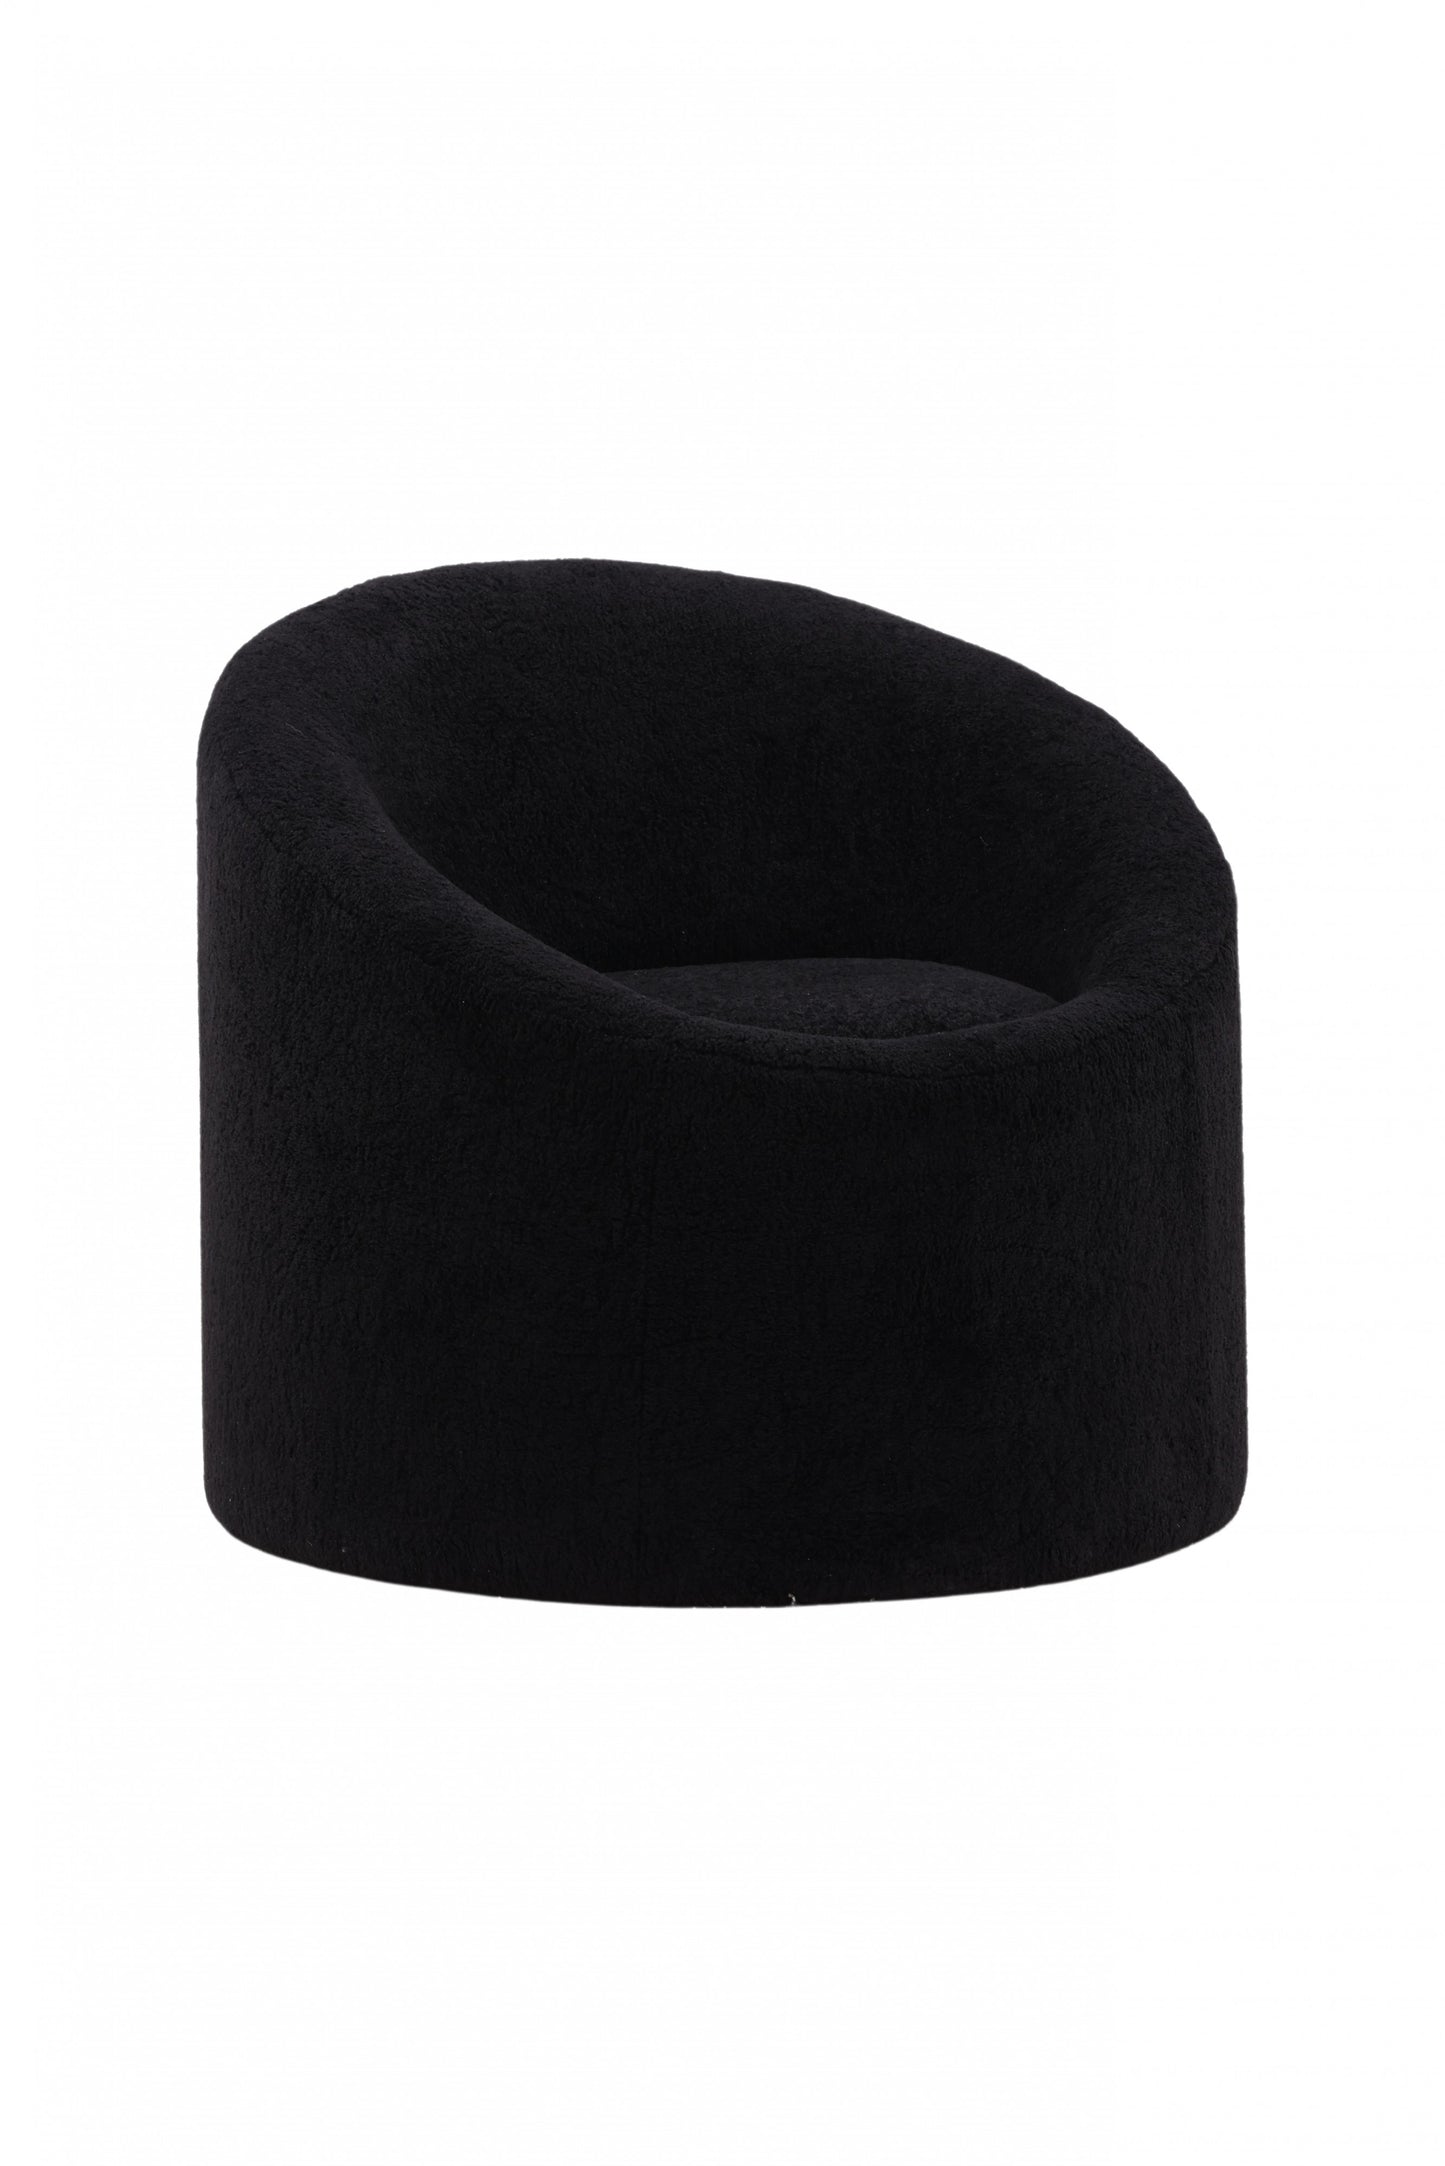 Venture-Design | Warren Lounge Chair - Schwarzes Vlies